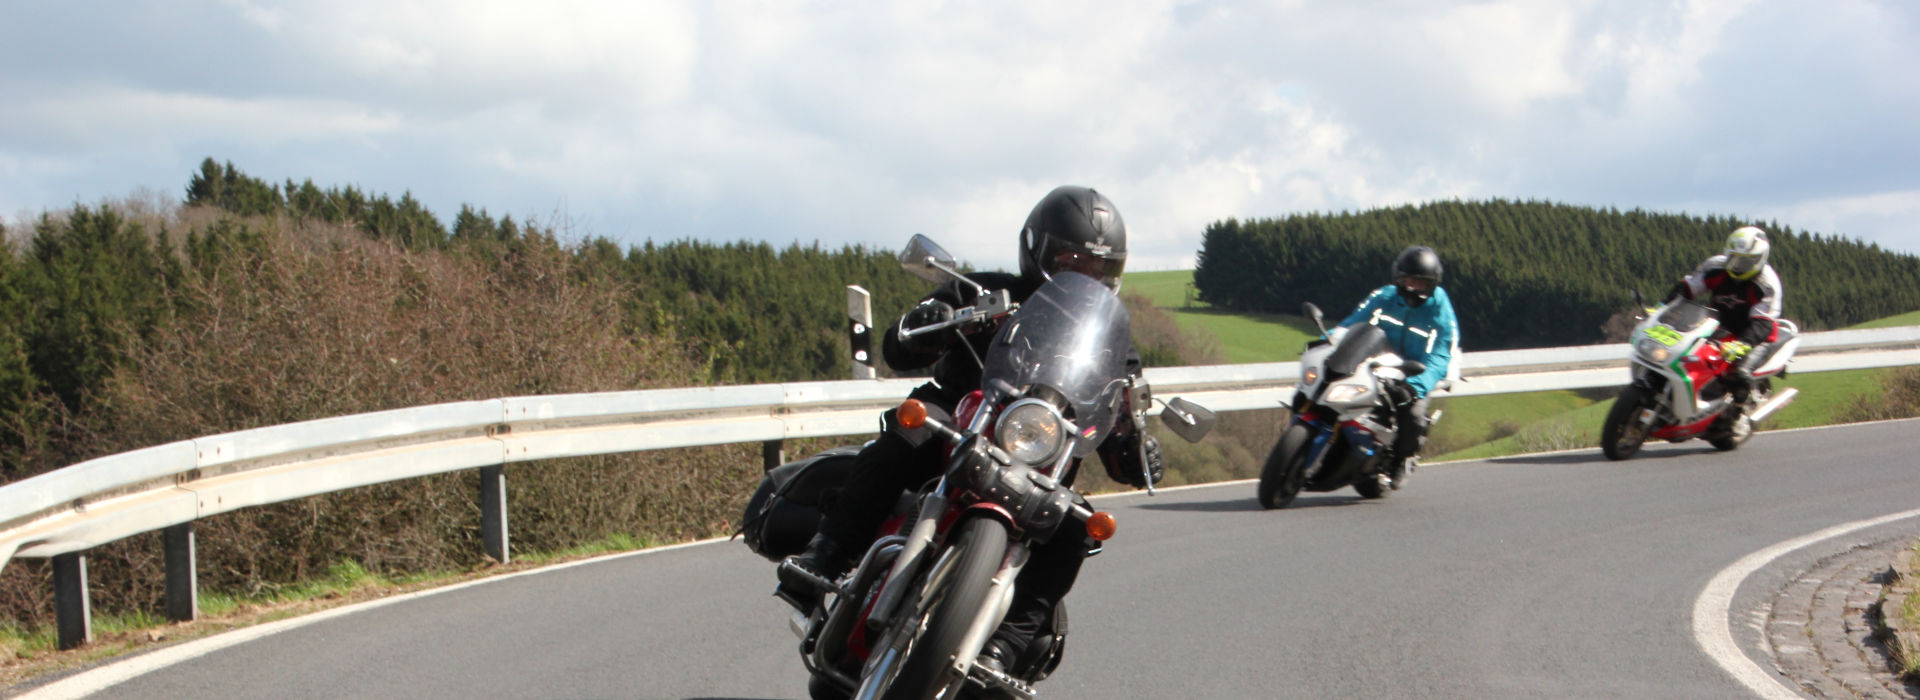 Motorrijschool Motorrijbewijspoint Huis ter Heide motorrijlessen